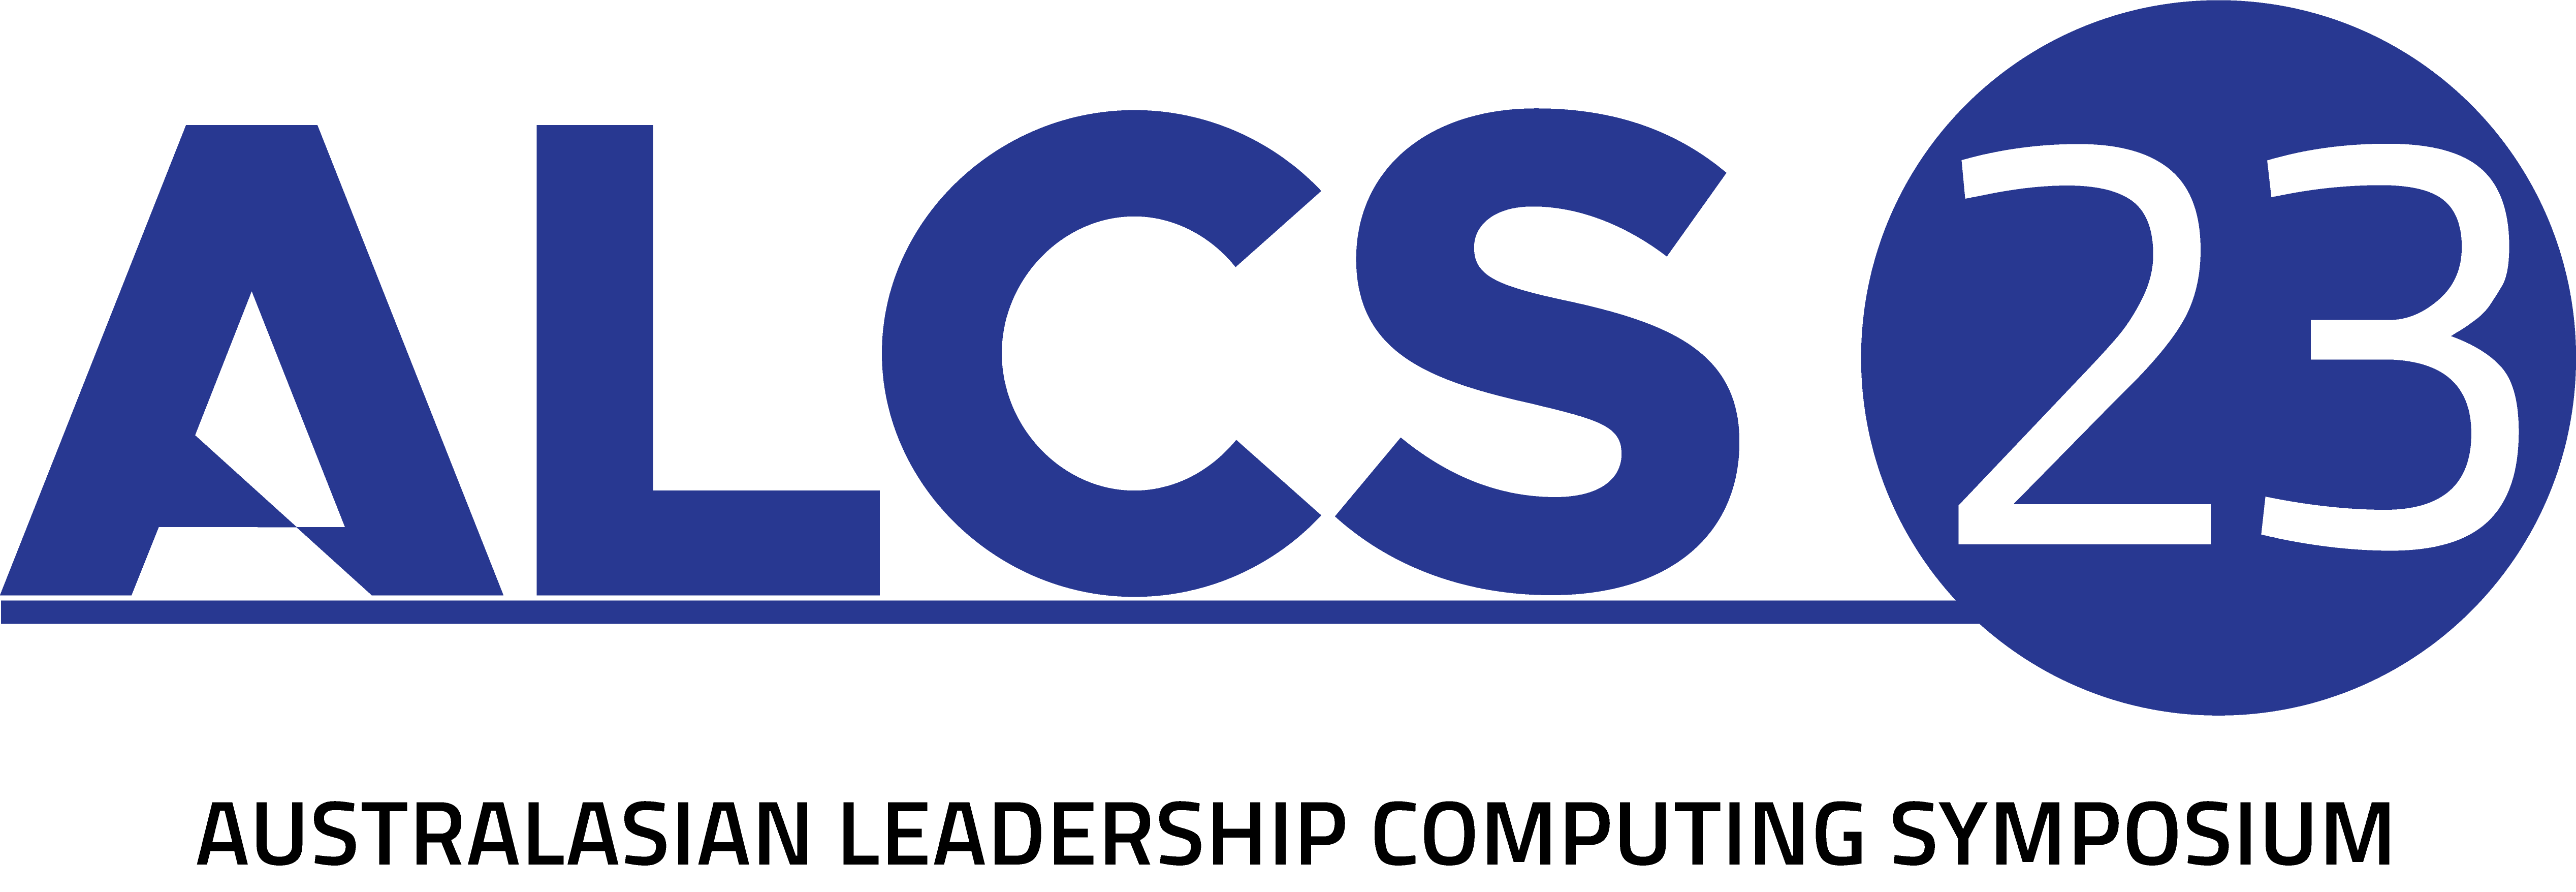 ALCS23 logo